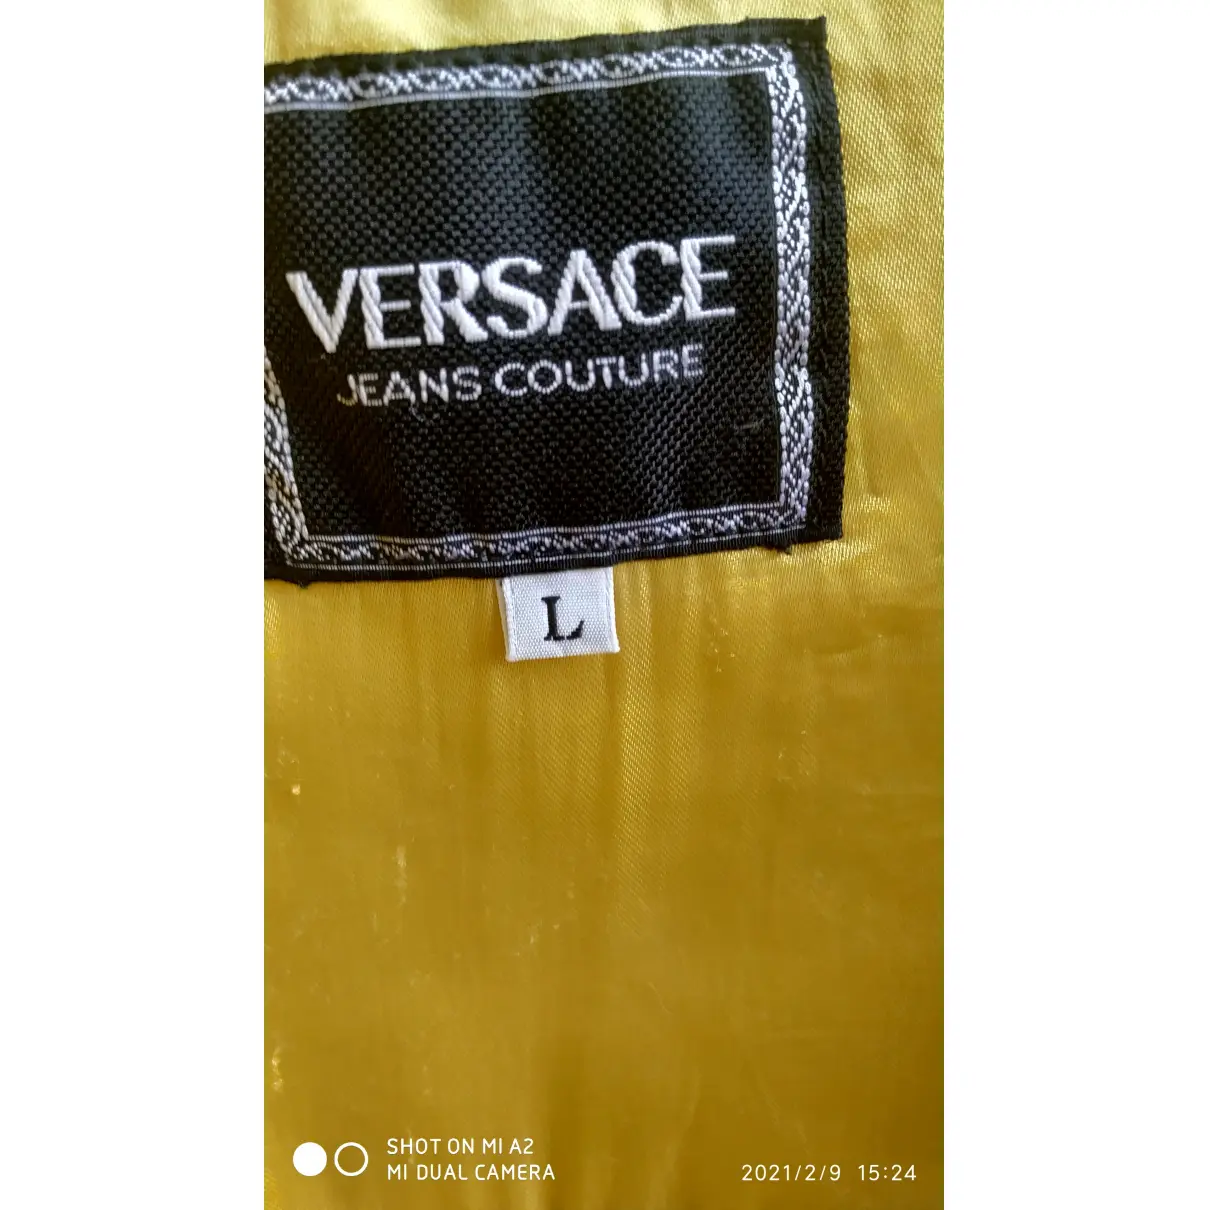 Suit jacket Versace Jeans Couture